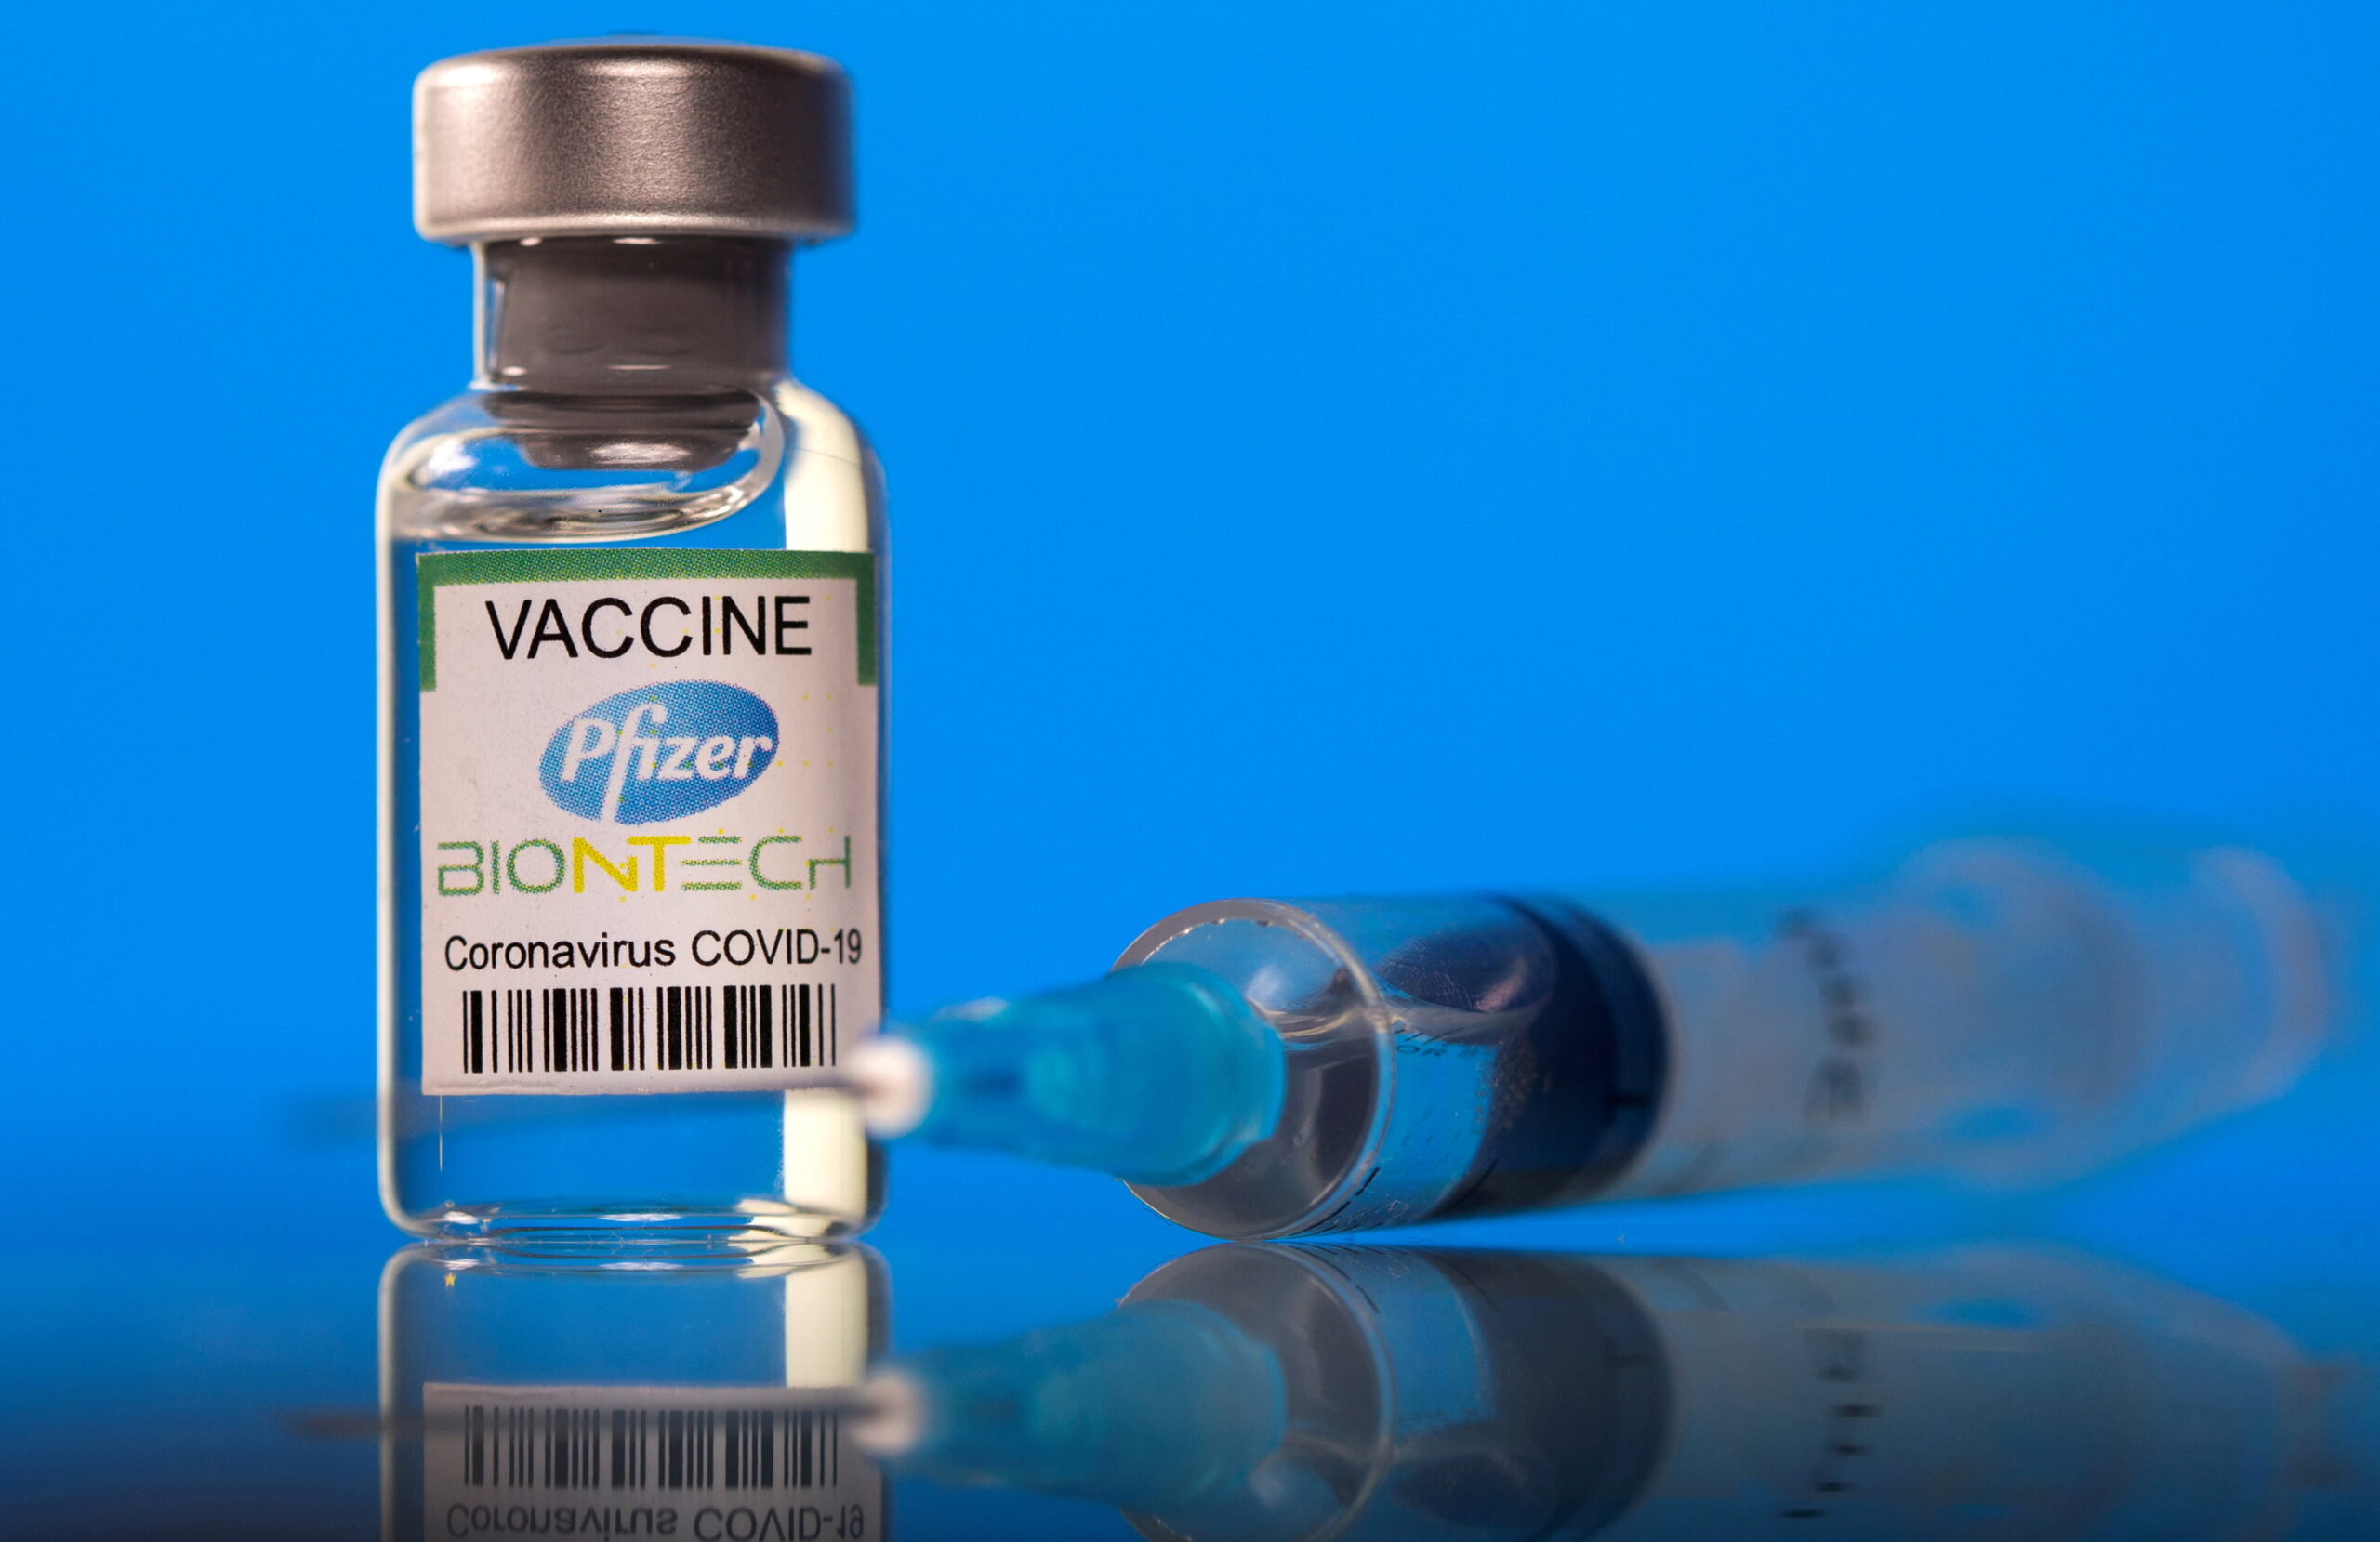 วัคซีนไฟเซอร์ 1.5 ล้านโดส จากสหรัฐฯ ถึงไทย พรุ่งนี้ (30 ก.ค.) – ต่างประเทศ